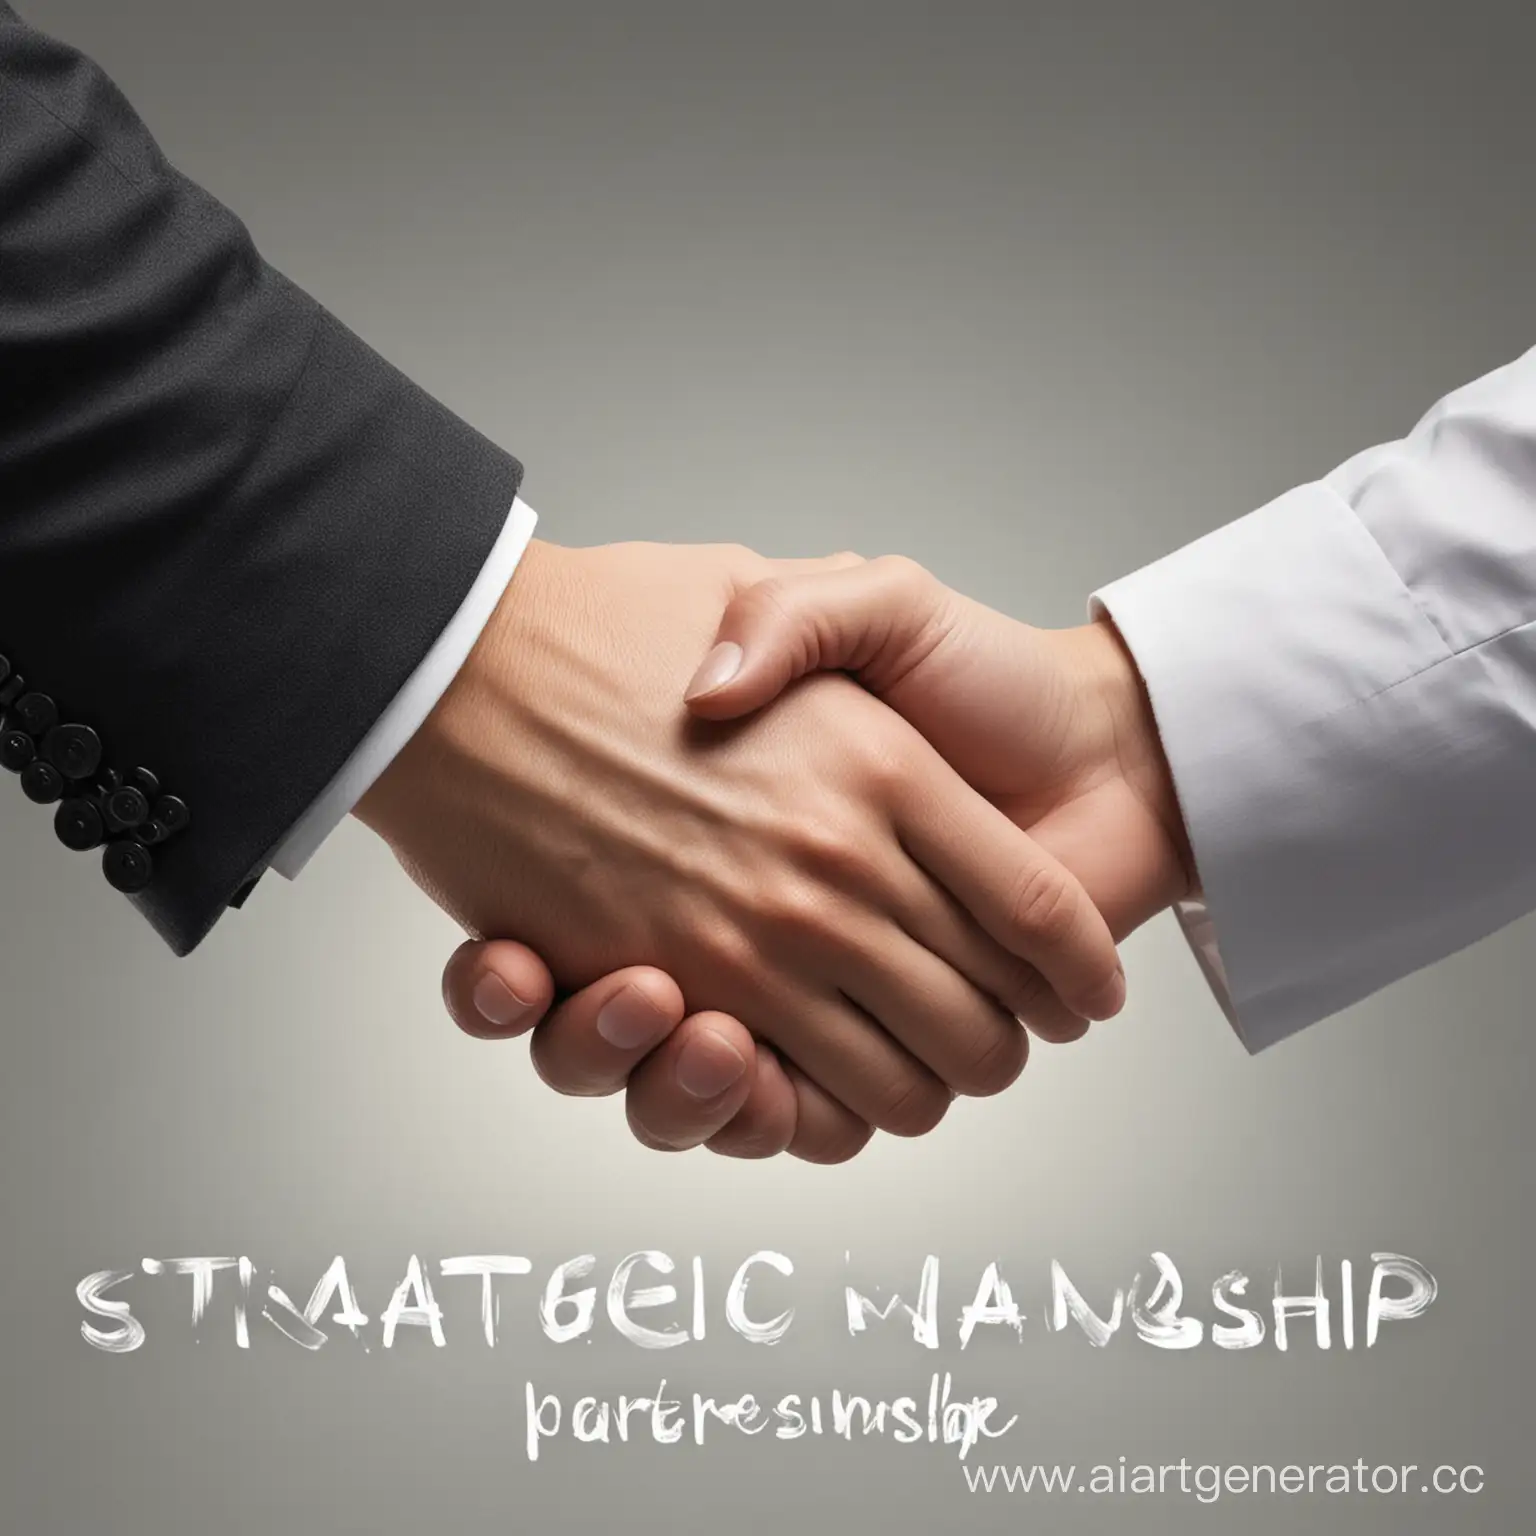 strategic partnership